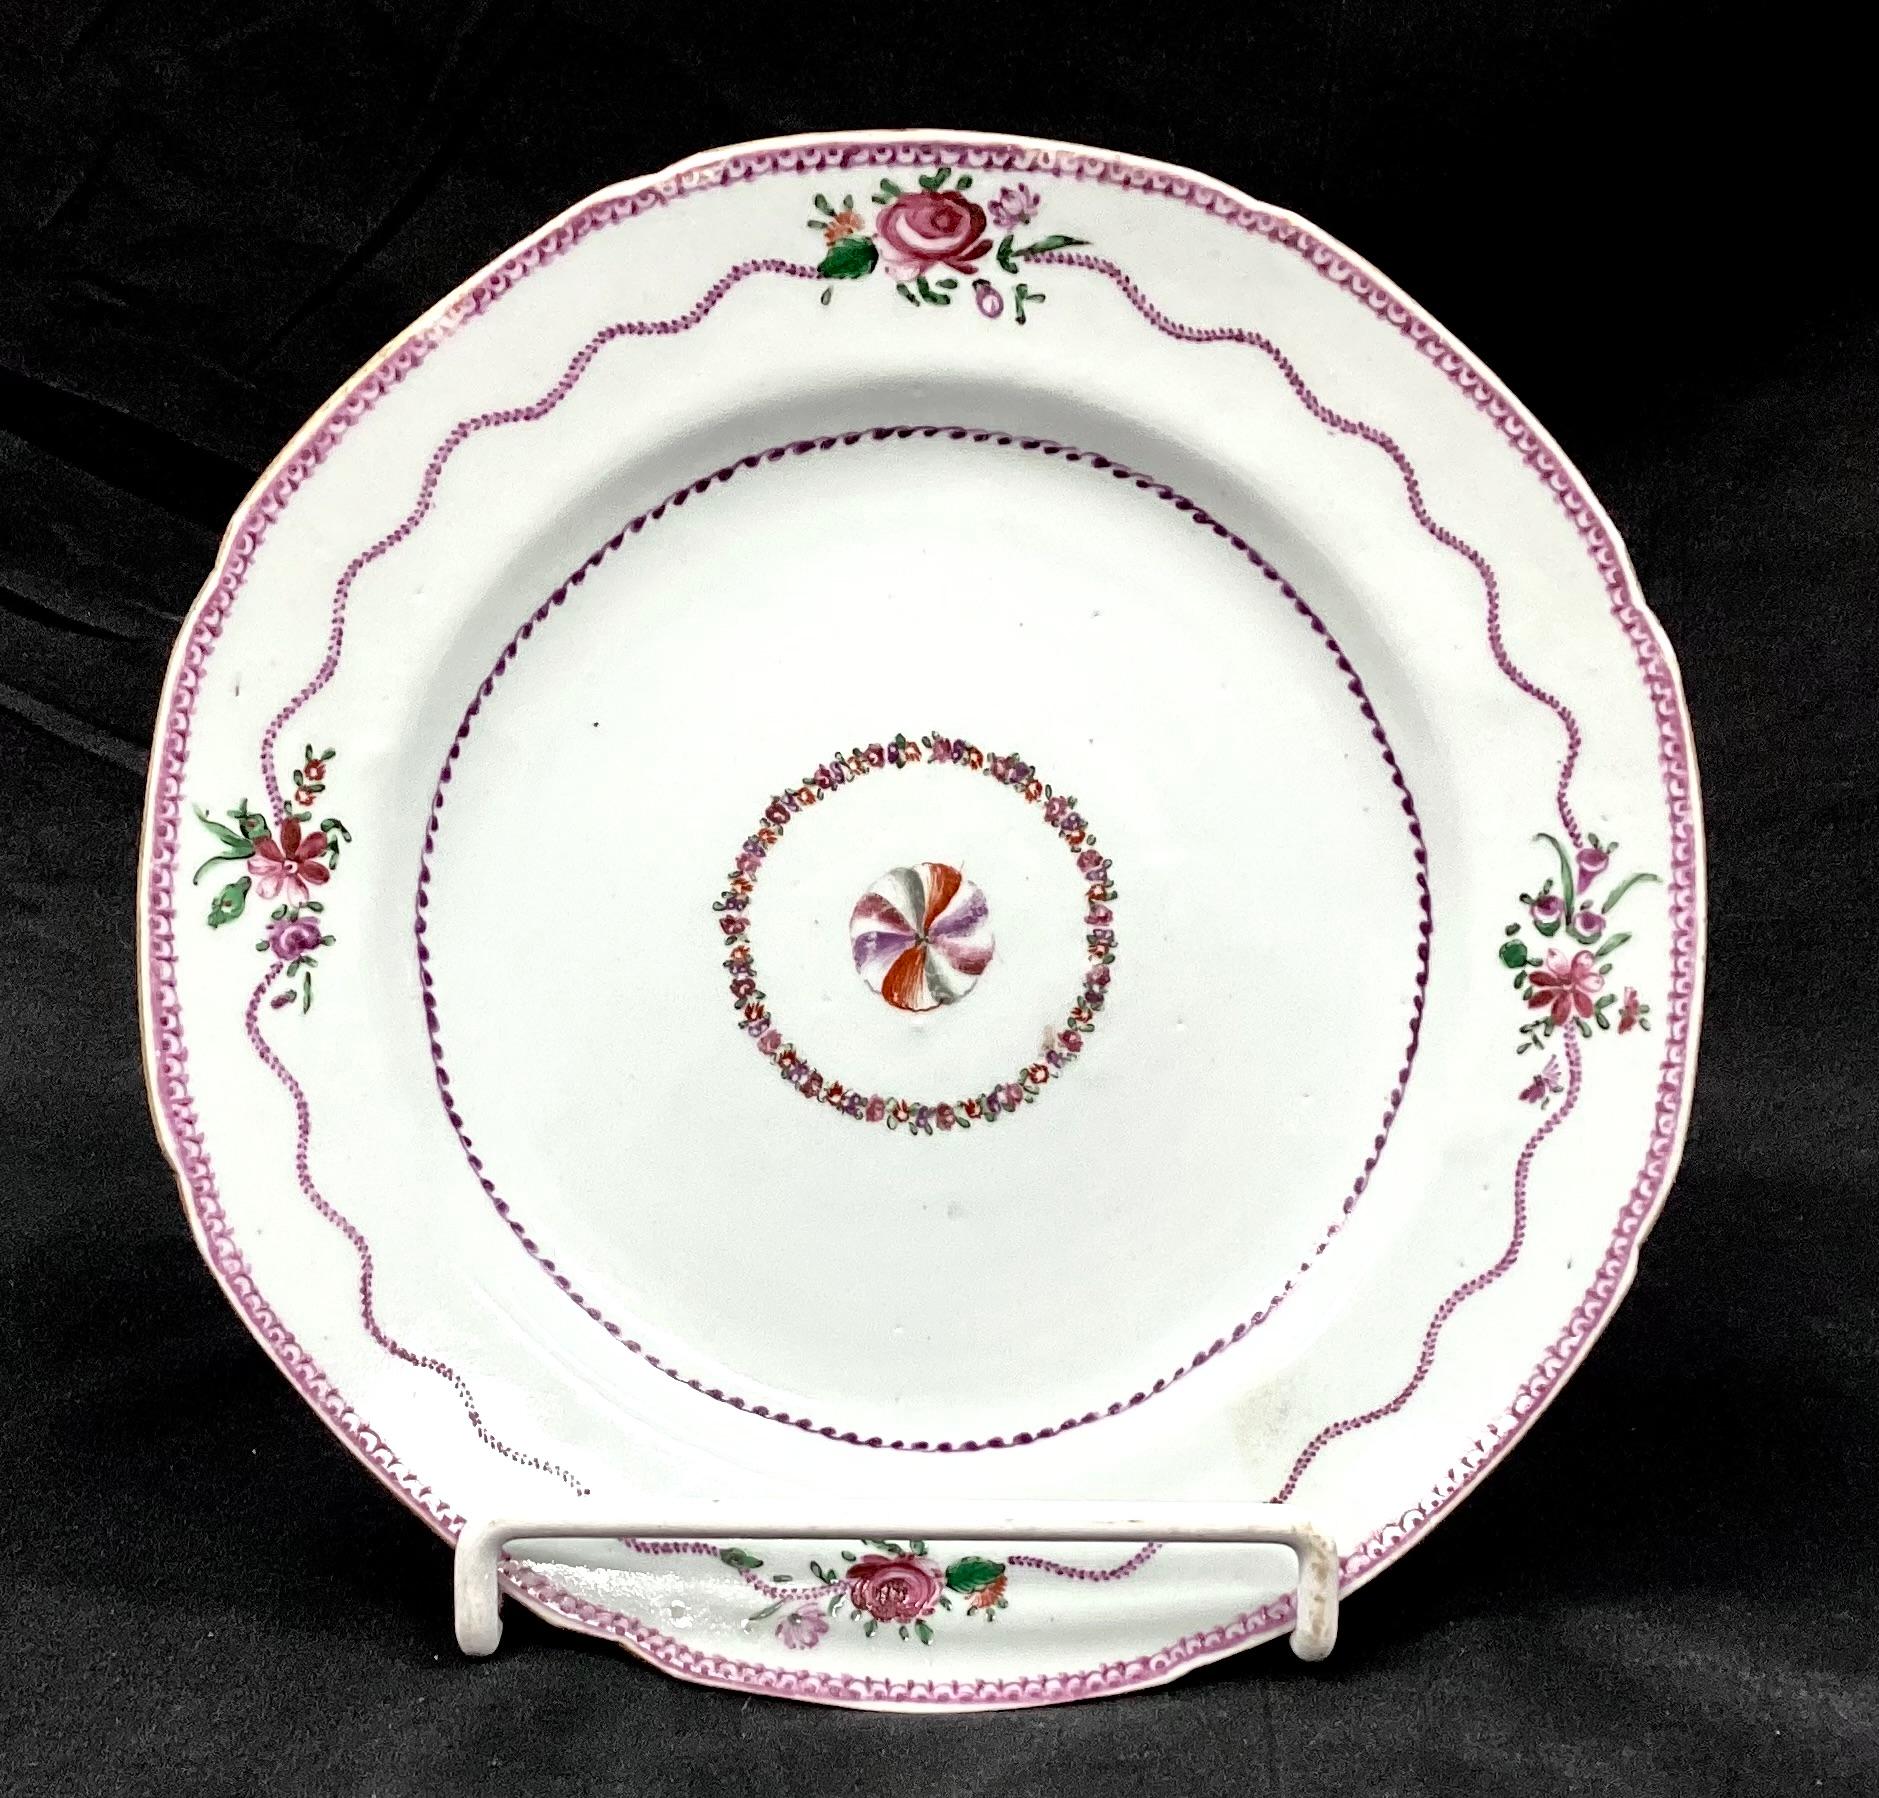 Satz von sechs Tellern aus chinesischem Exportporzellan des 18. Jahrhunderts. Die Teller sind mit Blumen handbemalt, die zentrale Blume ist von einer Girlande umgeben. Mit lila, grünen und weißen Farben. 